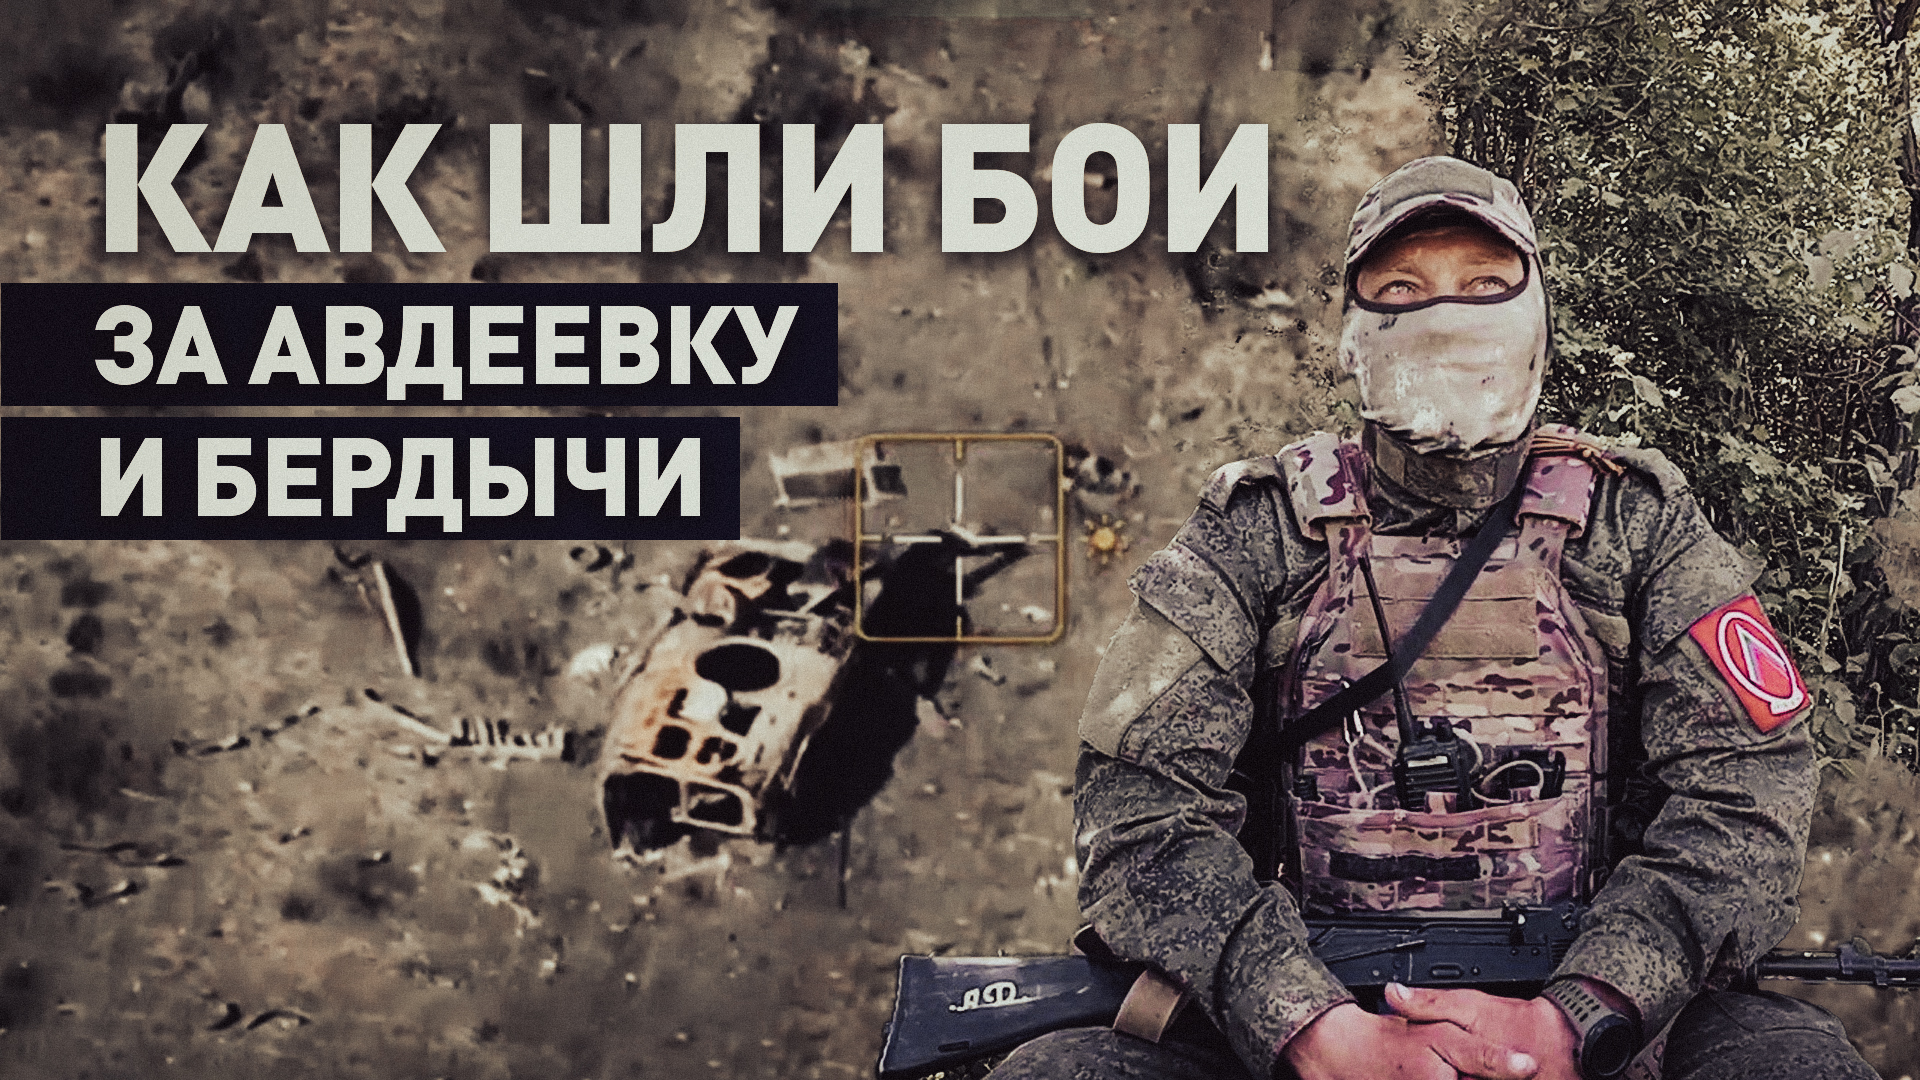 Близкий контакт с противником: командир штурмовой роты — о боях за Авдеевку и Бердычи